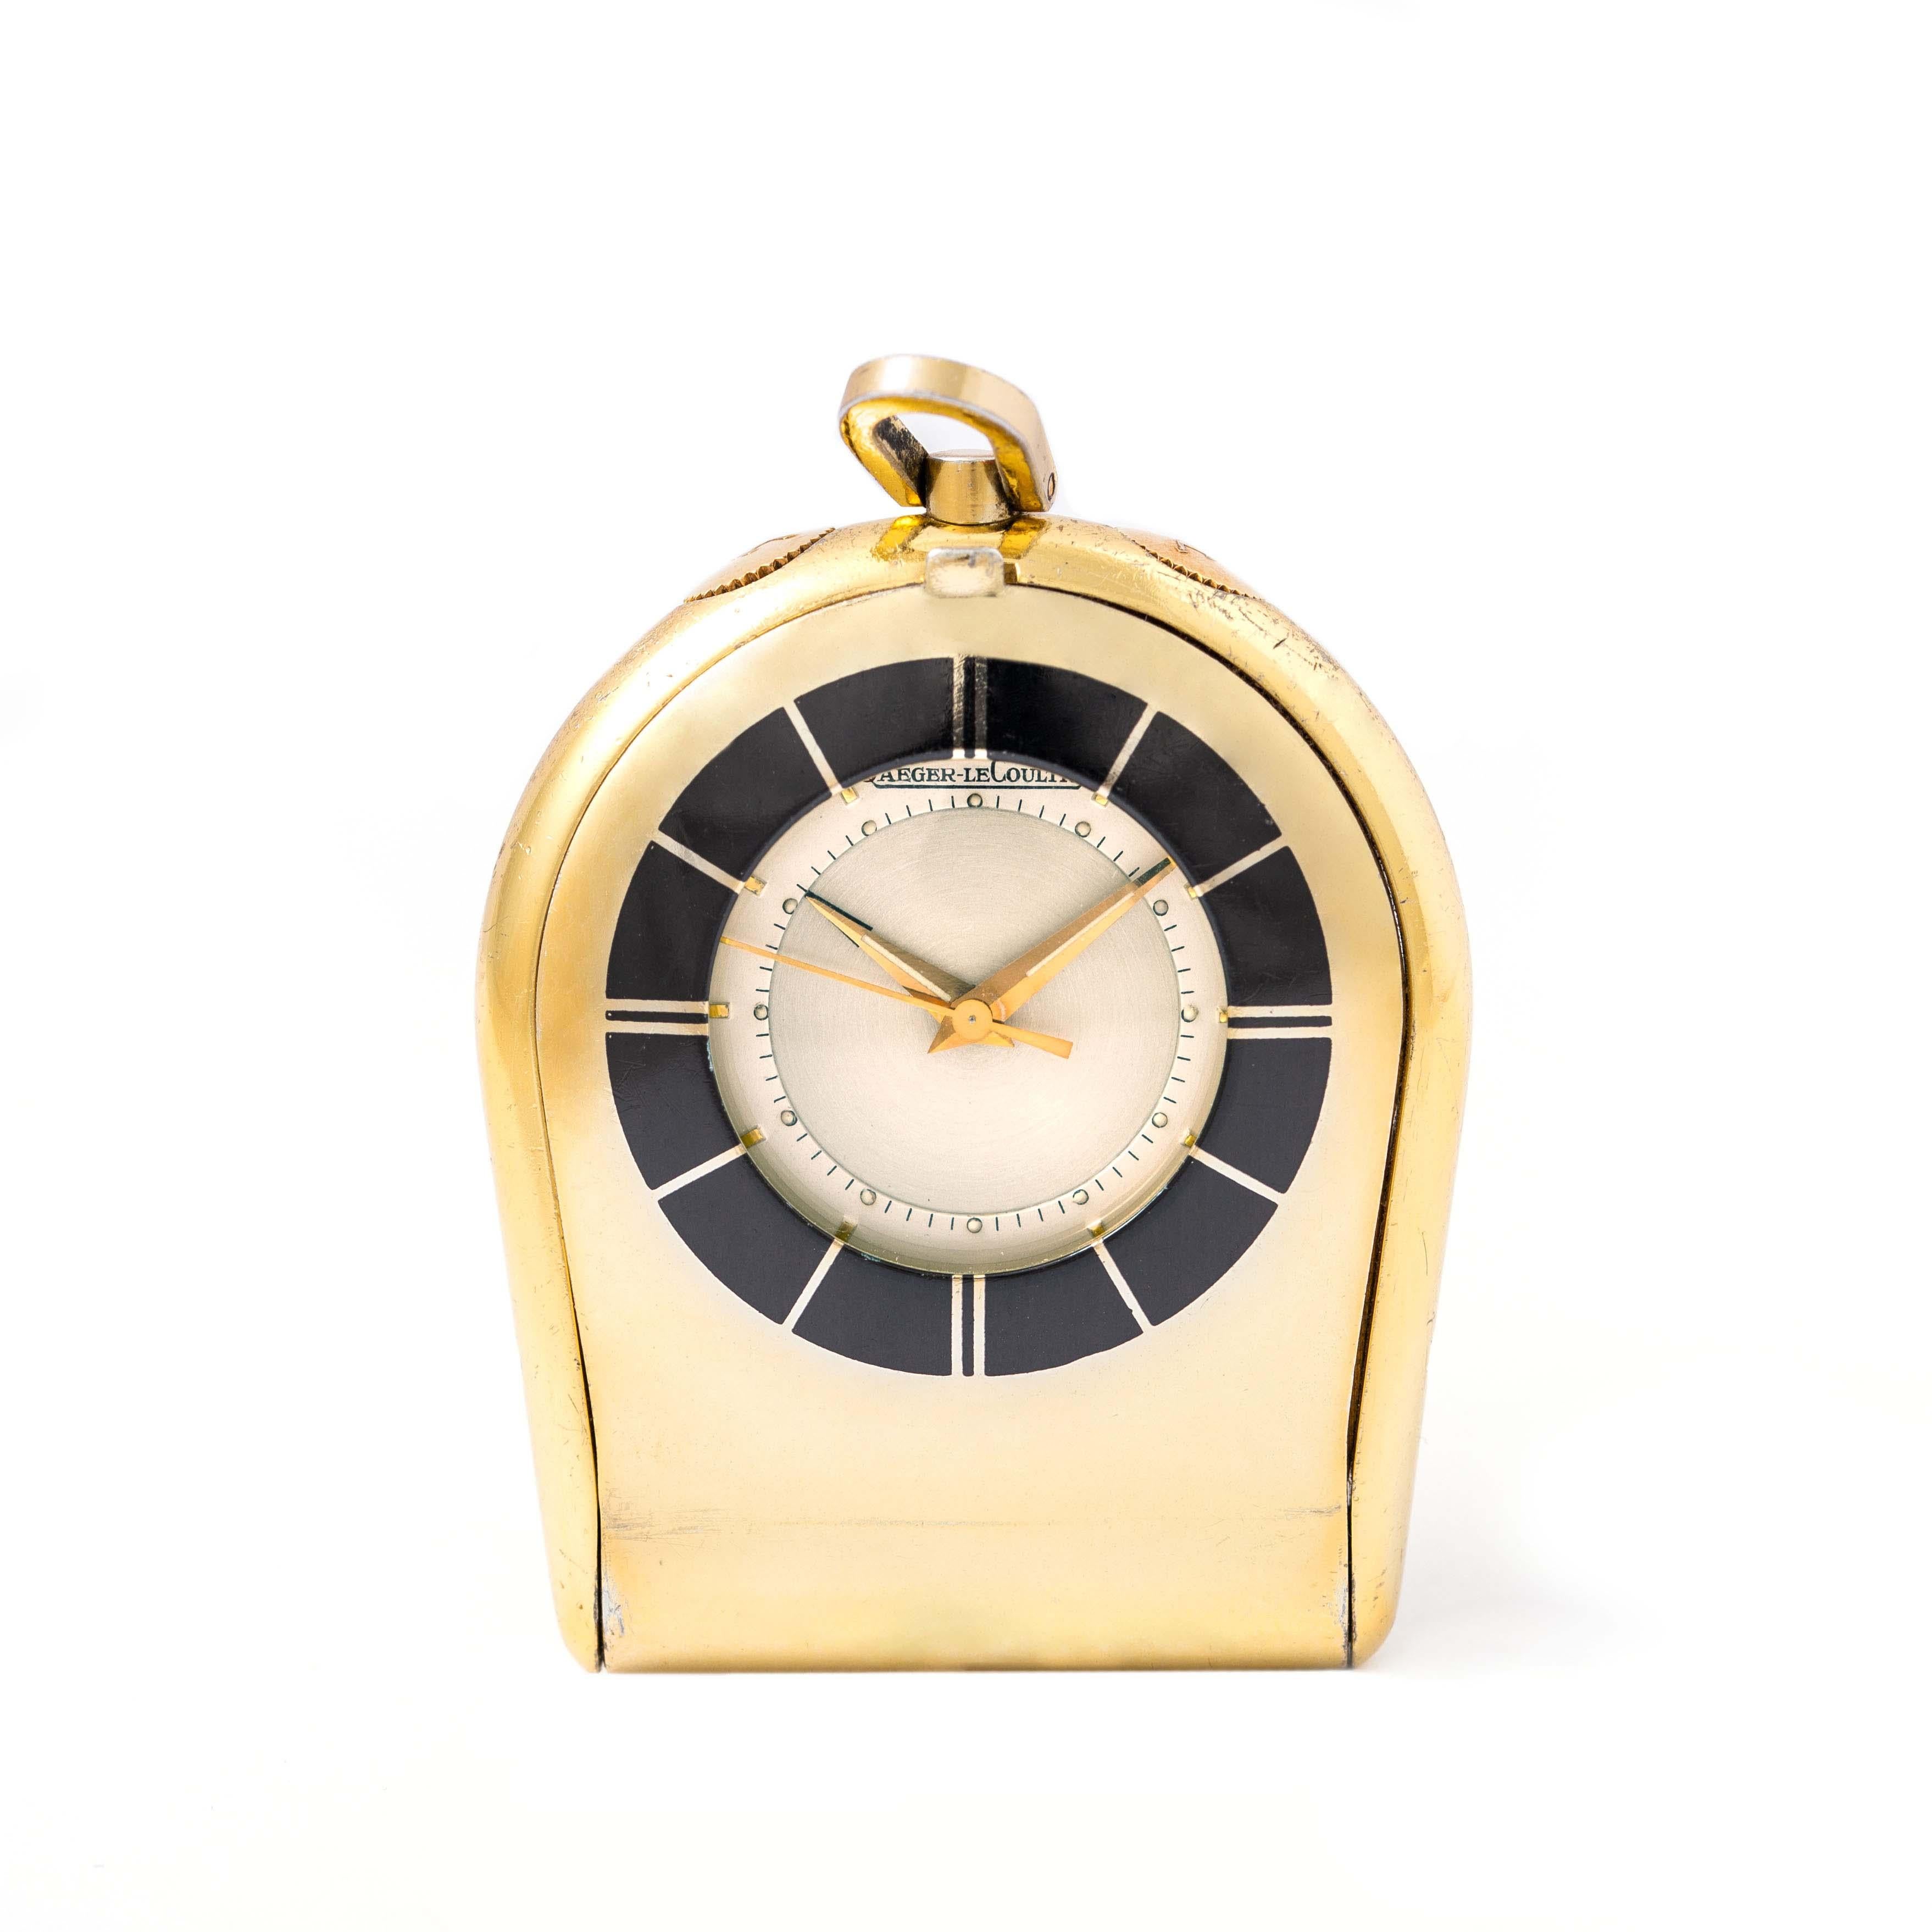 Jaeger-LeCoultre. Vergoldete Taschenuhr. Signiert und nummeriert. 
Original Jaeger-LeCoultre Etui.
Wir übernehmen keine Garantie für die Funktionstüchtigkeit der Uhrwerke.
Kratzer. Länge: 4.60 Zentimeter. Breite: 3.60 Zentimeter. 
Gesamtgewicht: